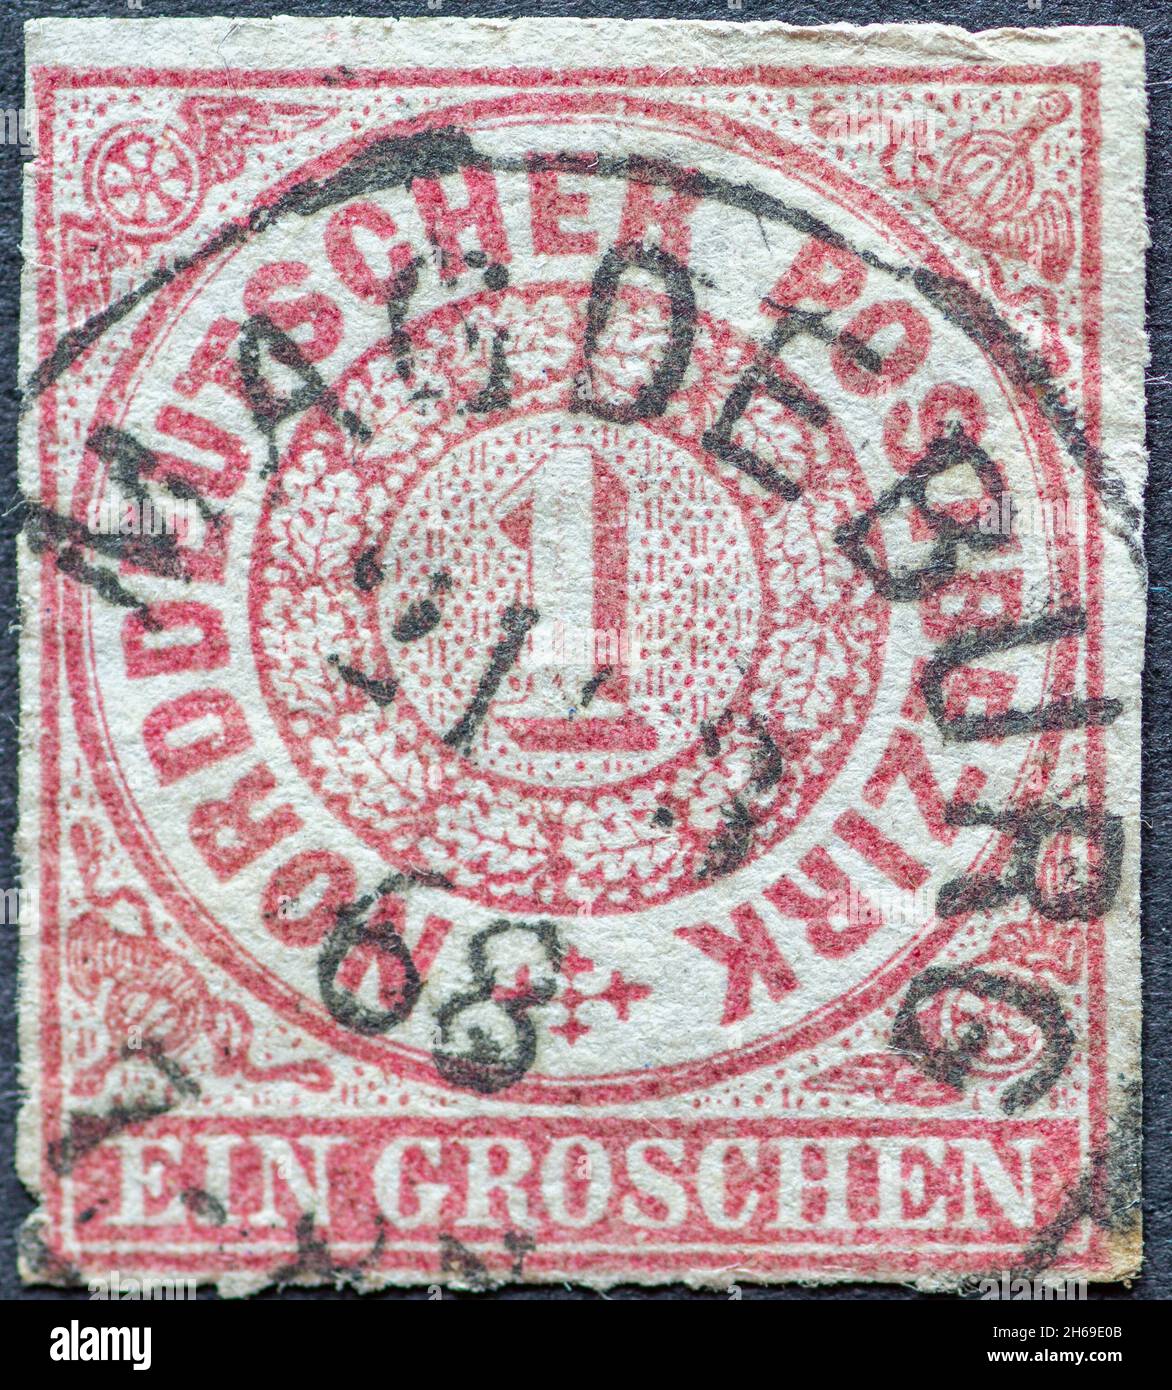 ALLEMAGNE - VERS 1868 : timbre-poste du district postal du nord de l'Allemagne.Une grande couleur: Carmin Banque D'Images